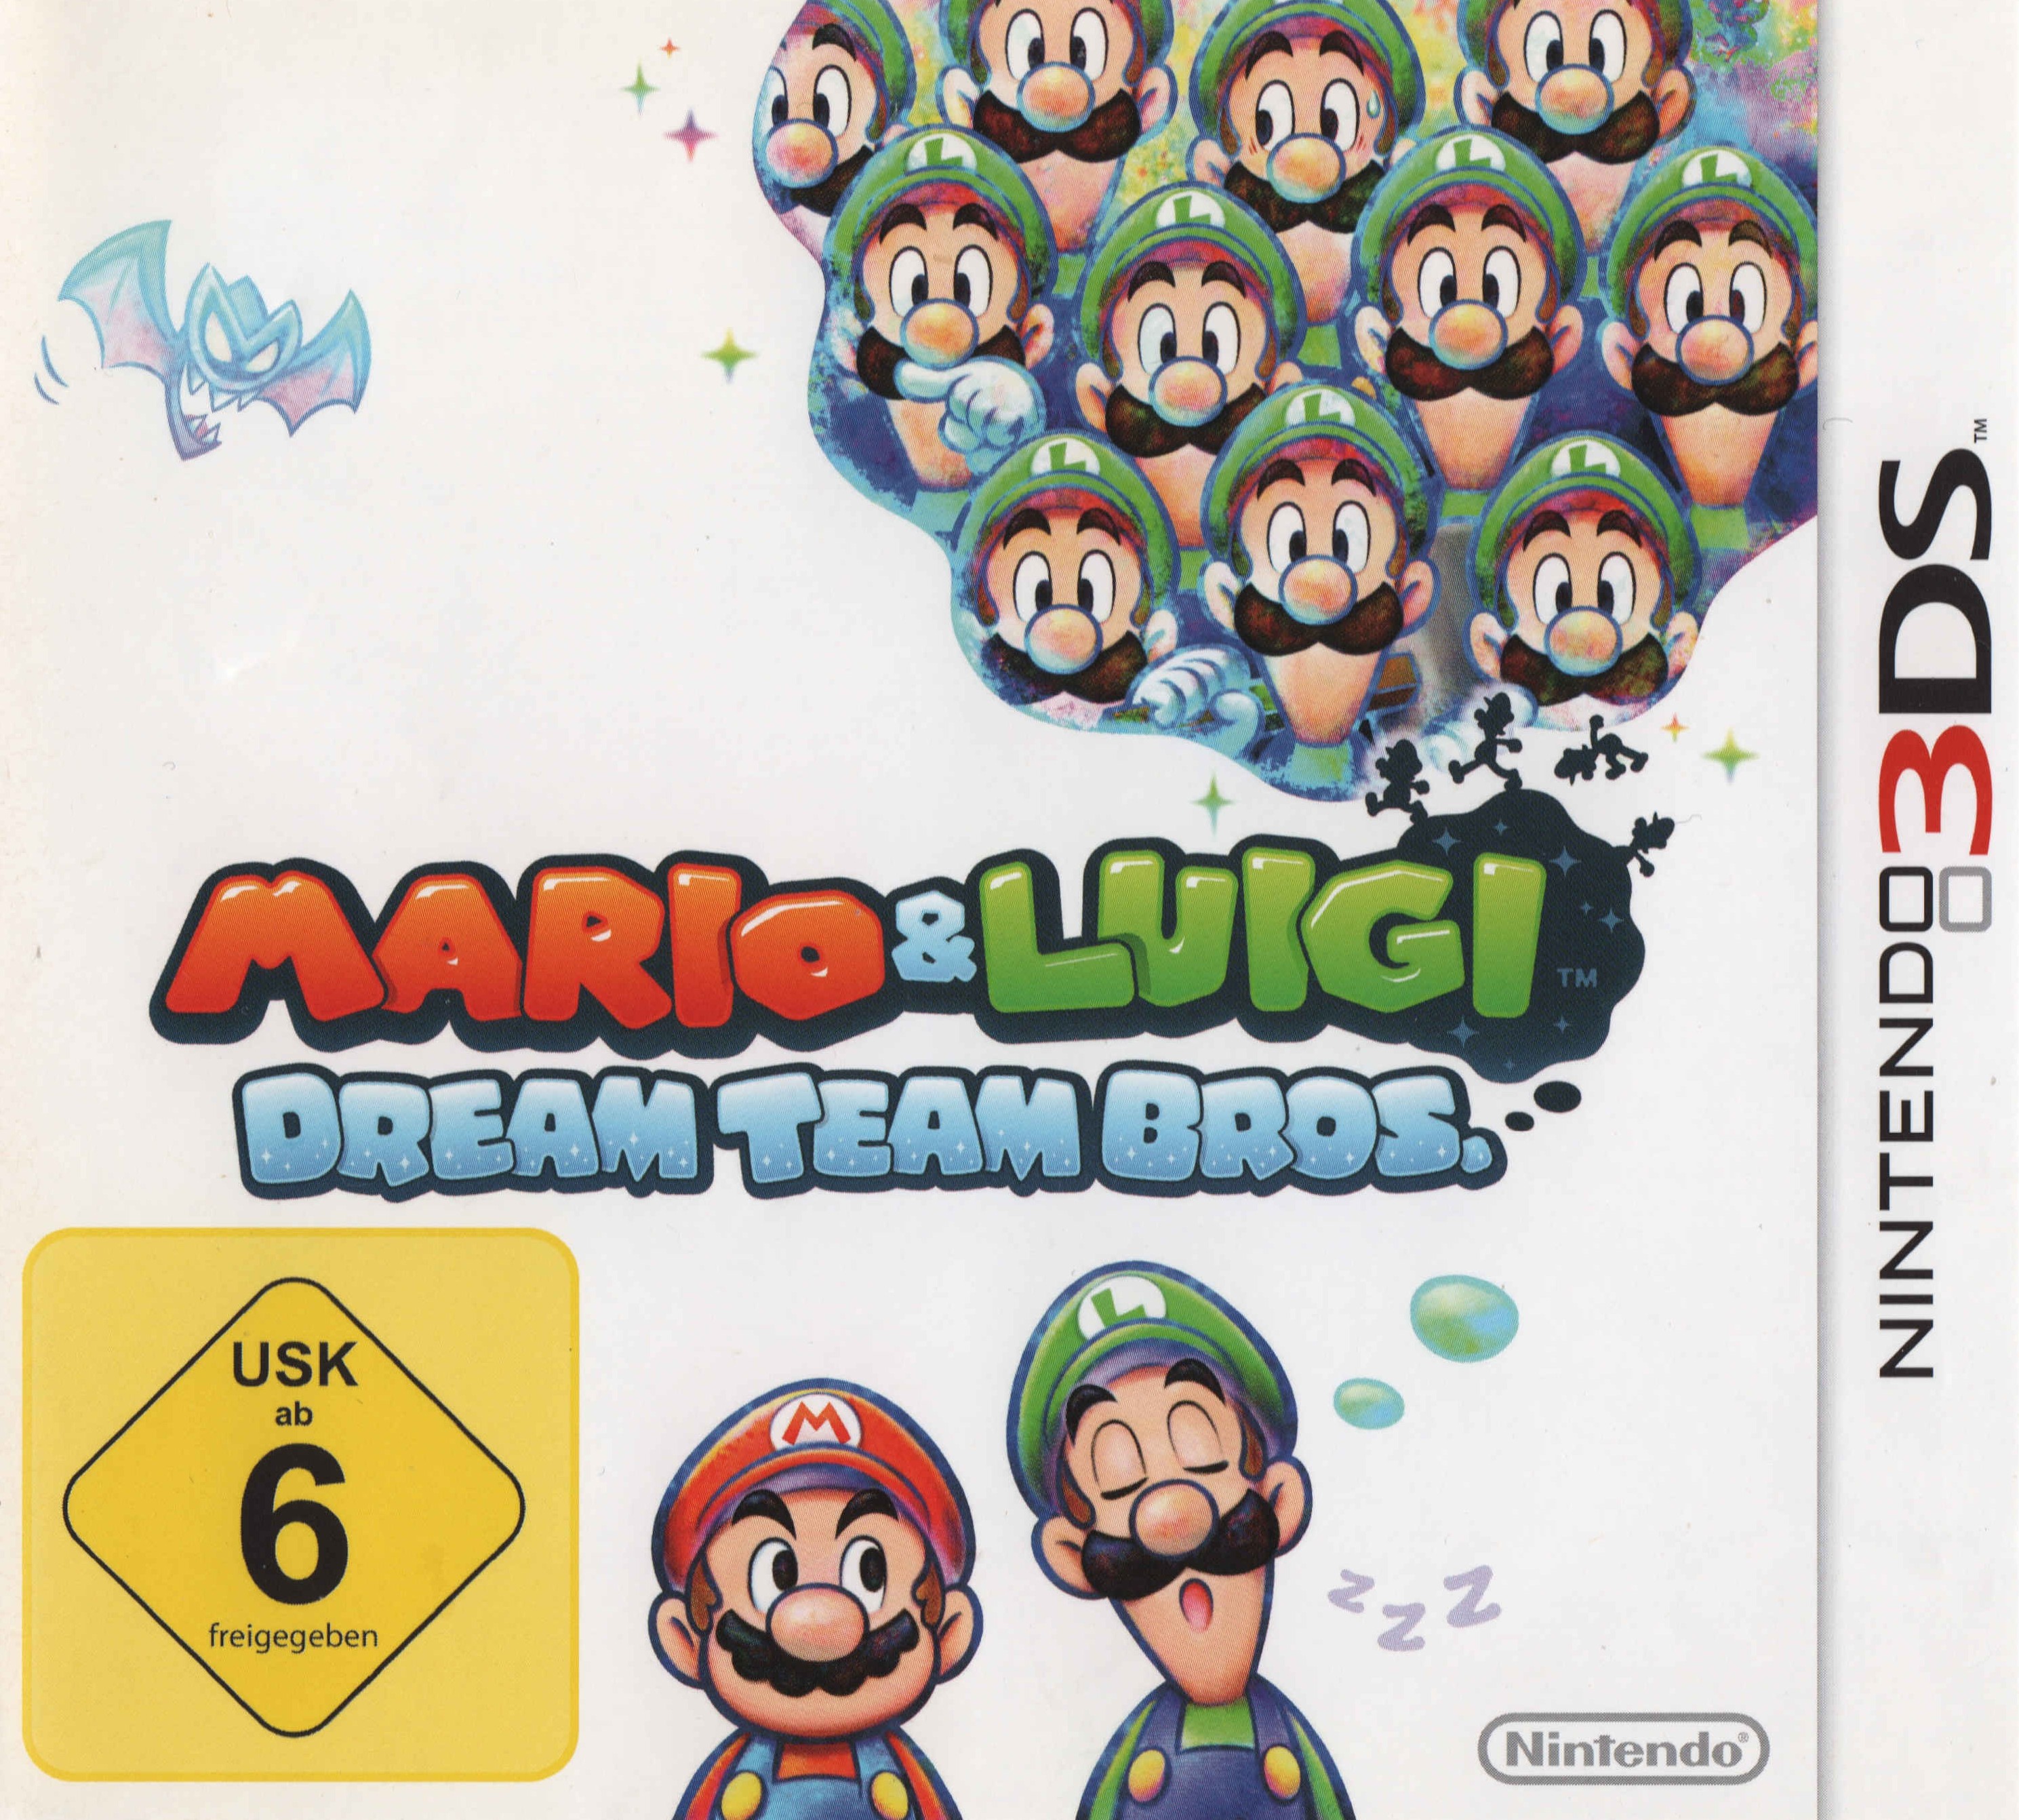 'Mario and Luigi: Dream Team Bros.'